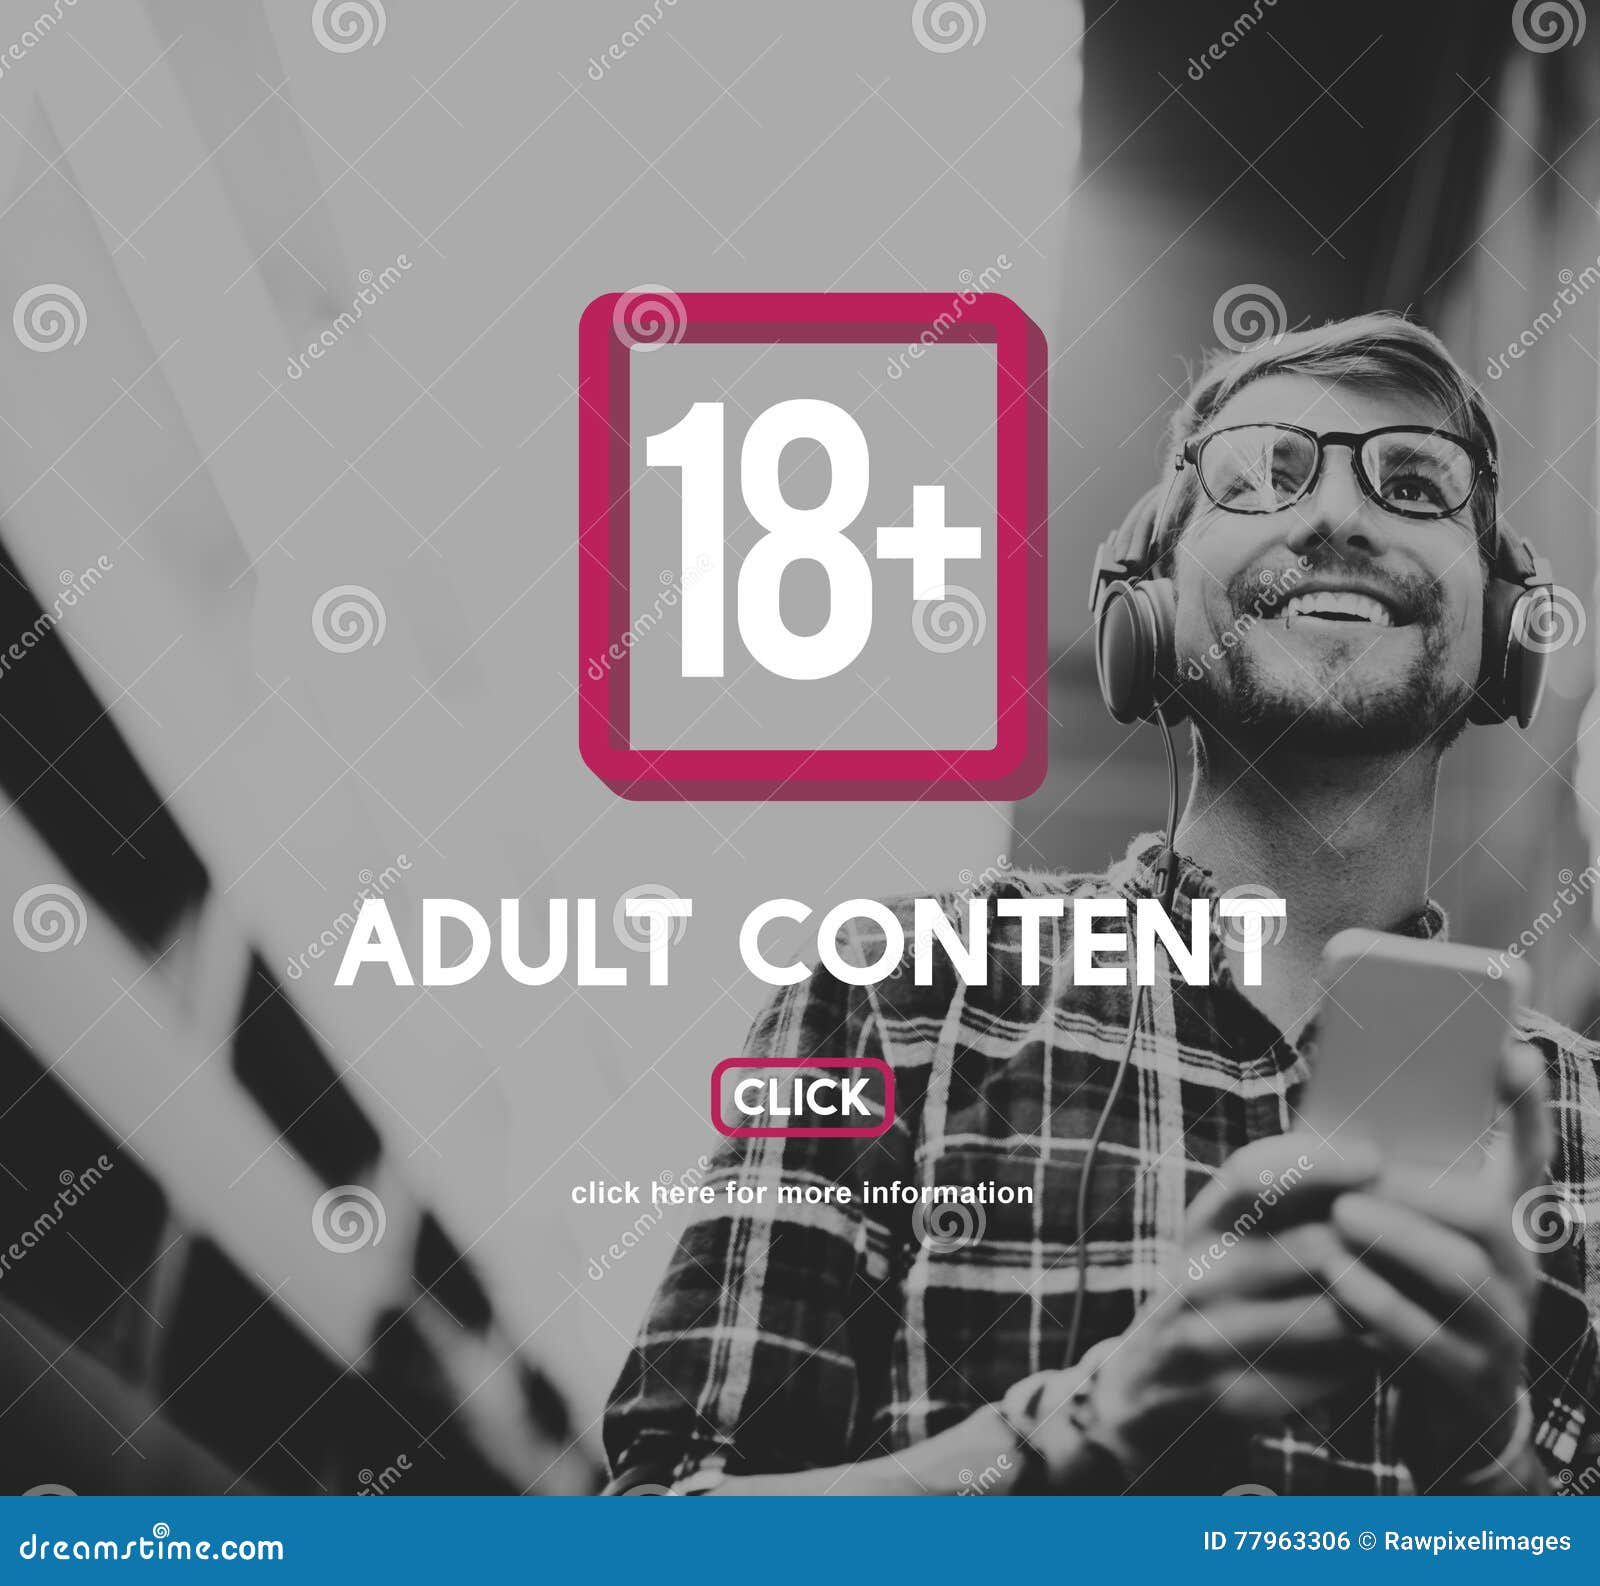 eighteen plus adult explicit content warning